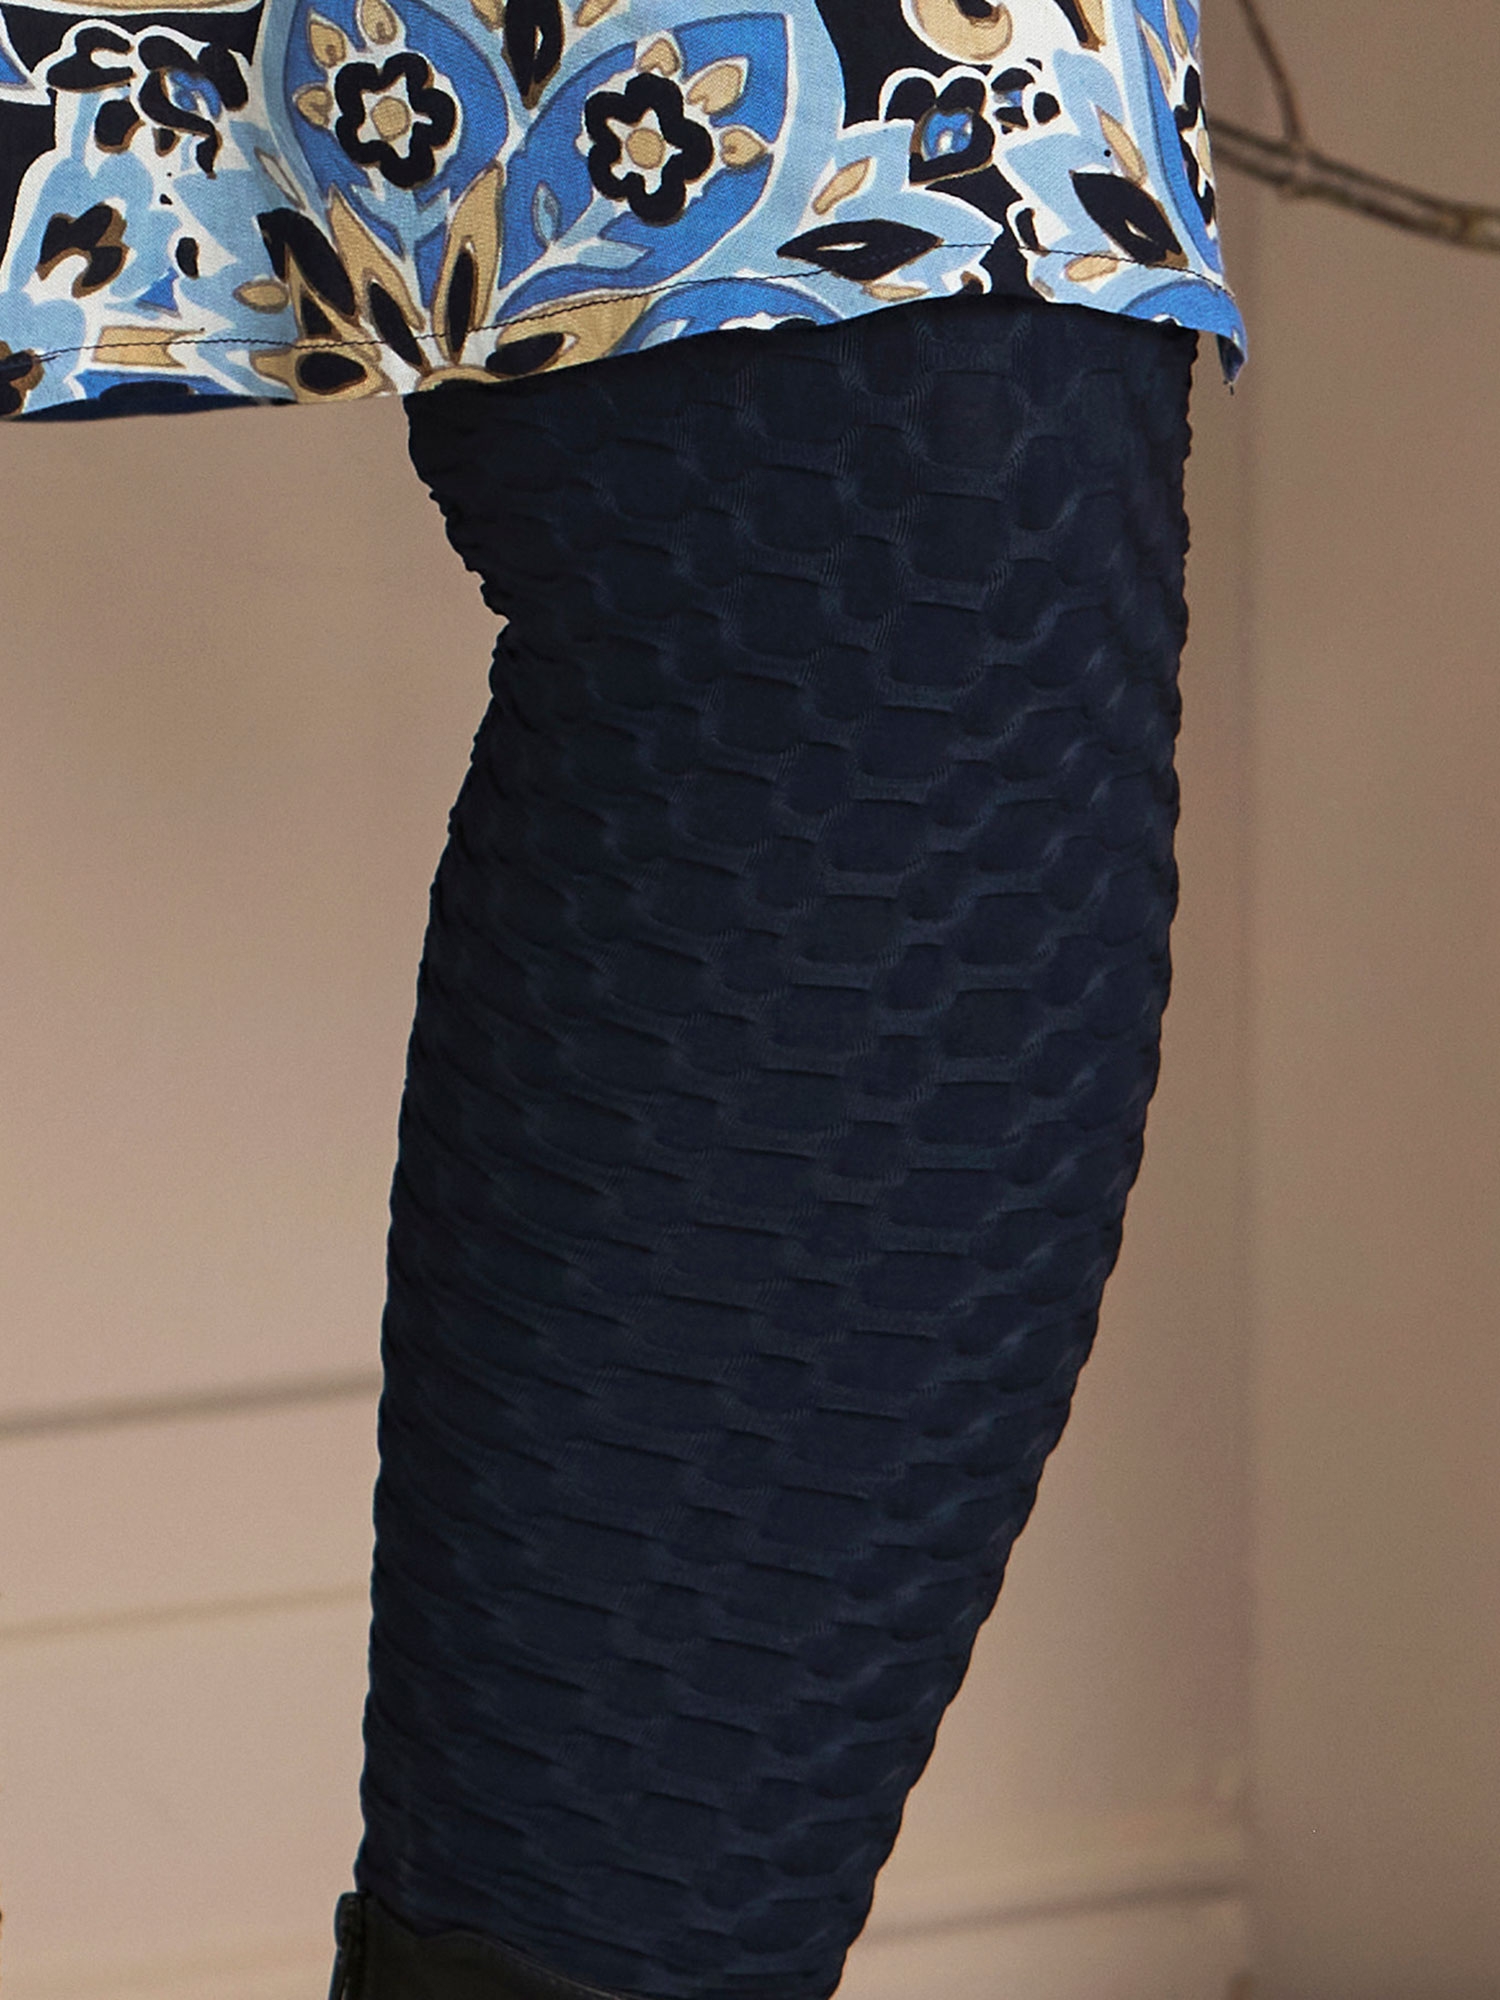 ROMY - Marine blå stretch leggings med 3-D struktur fra Zhenzi